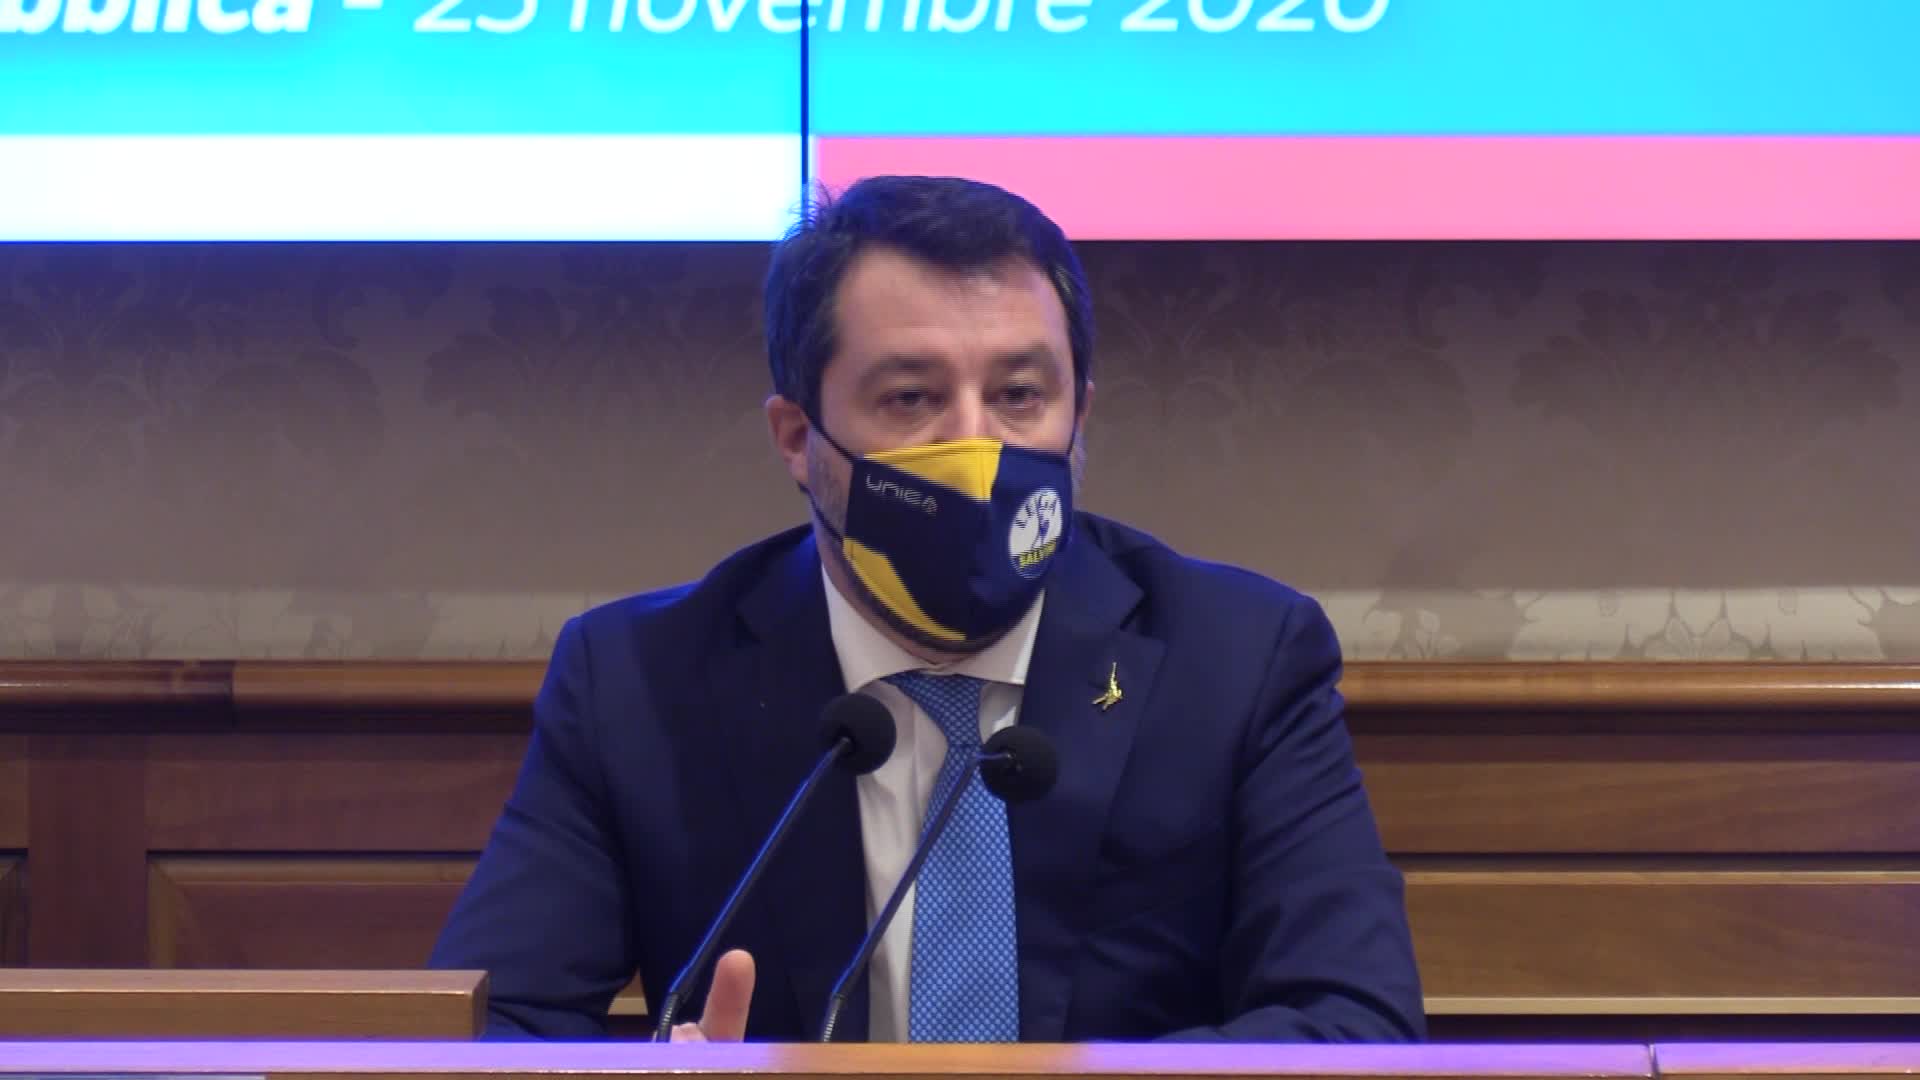 Violenza donne, Salvini: "Non mancheranno proposte emendative in manovra"